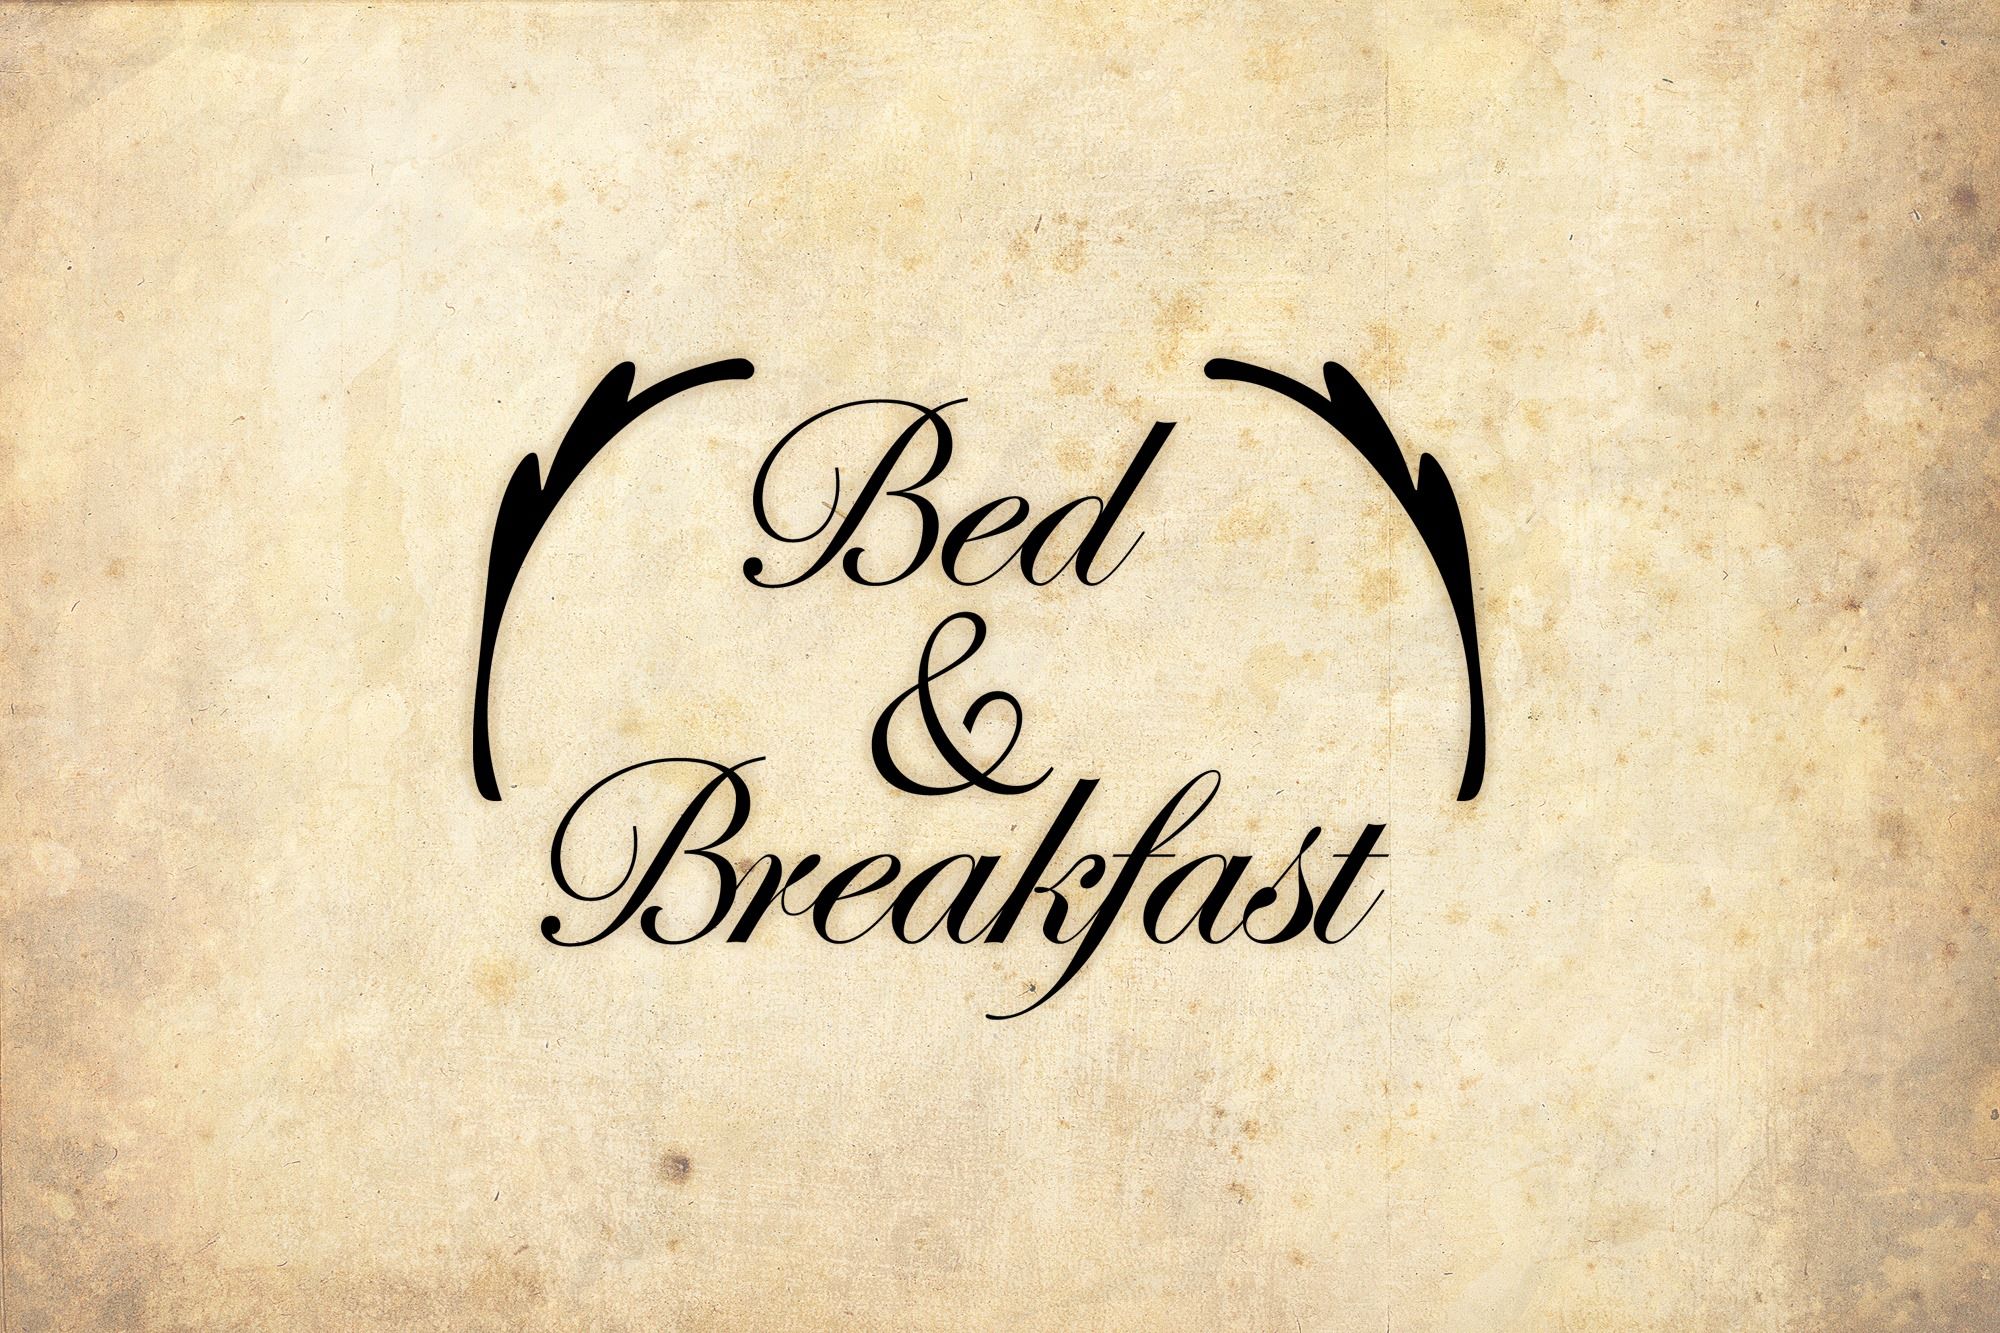 Bed & Breakfast ne zaman